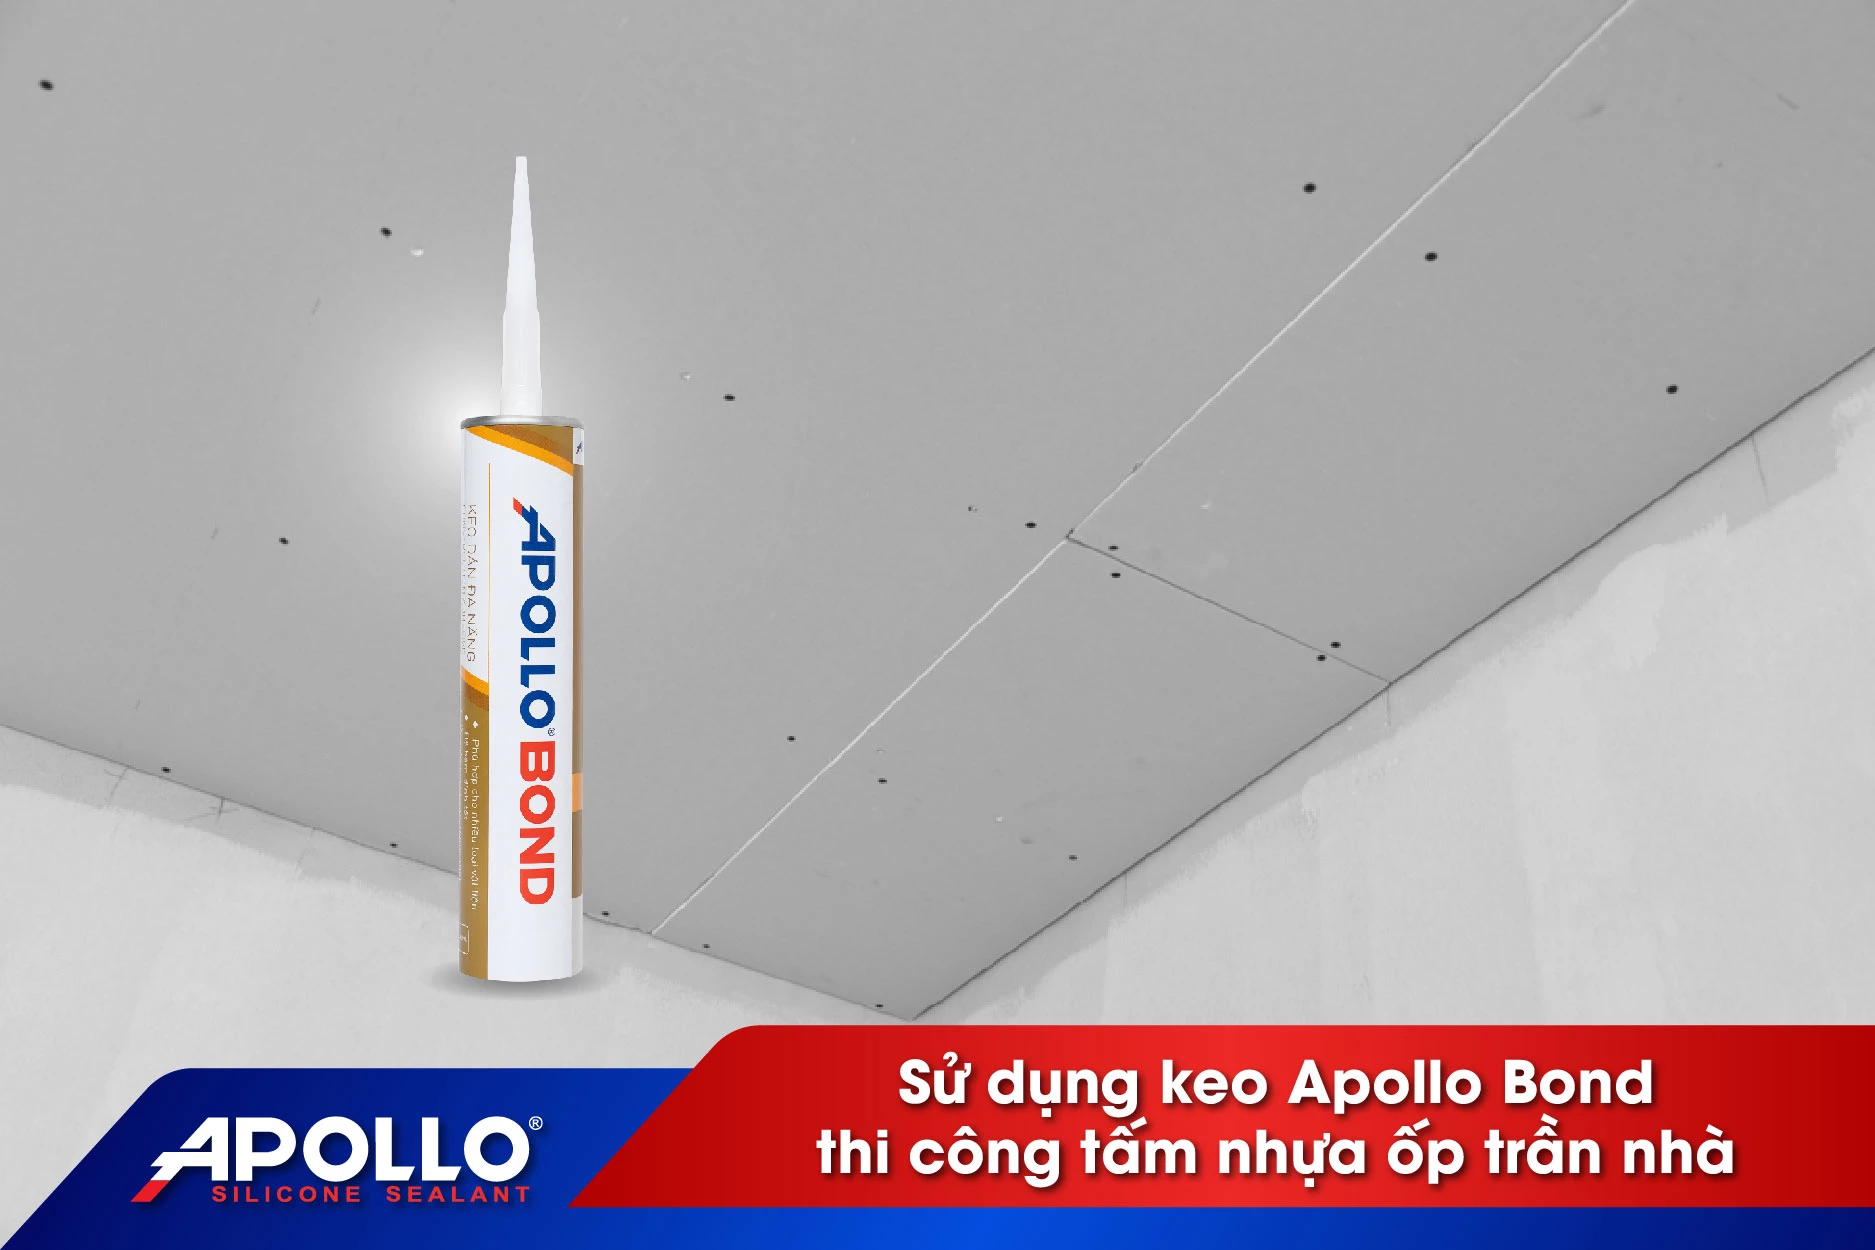 Dùng keo Apollo Bond thi công tấm nhựa ốp trần nhà thay cho đinh vít